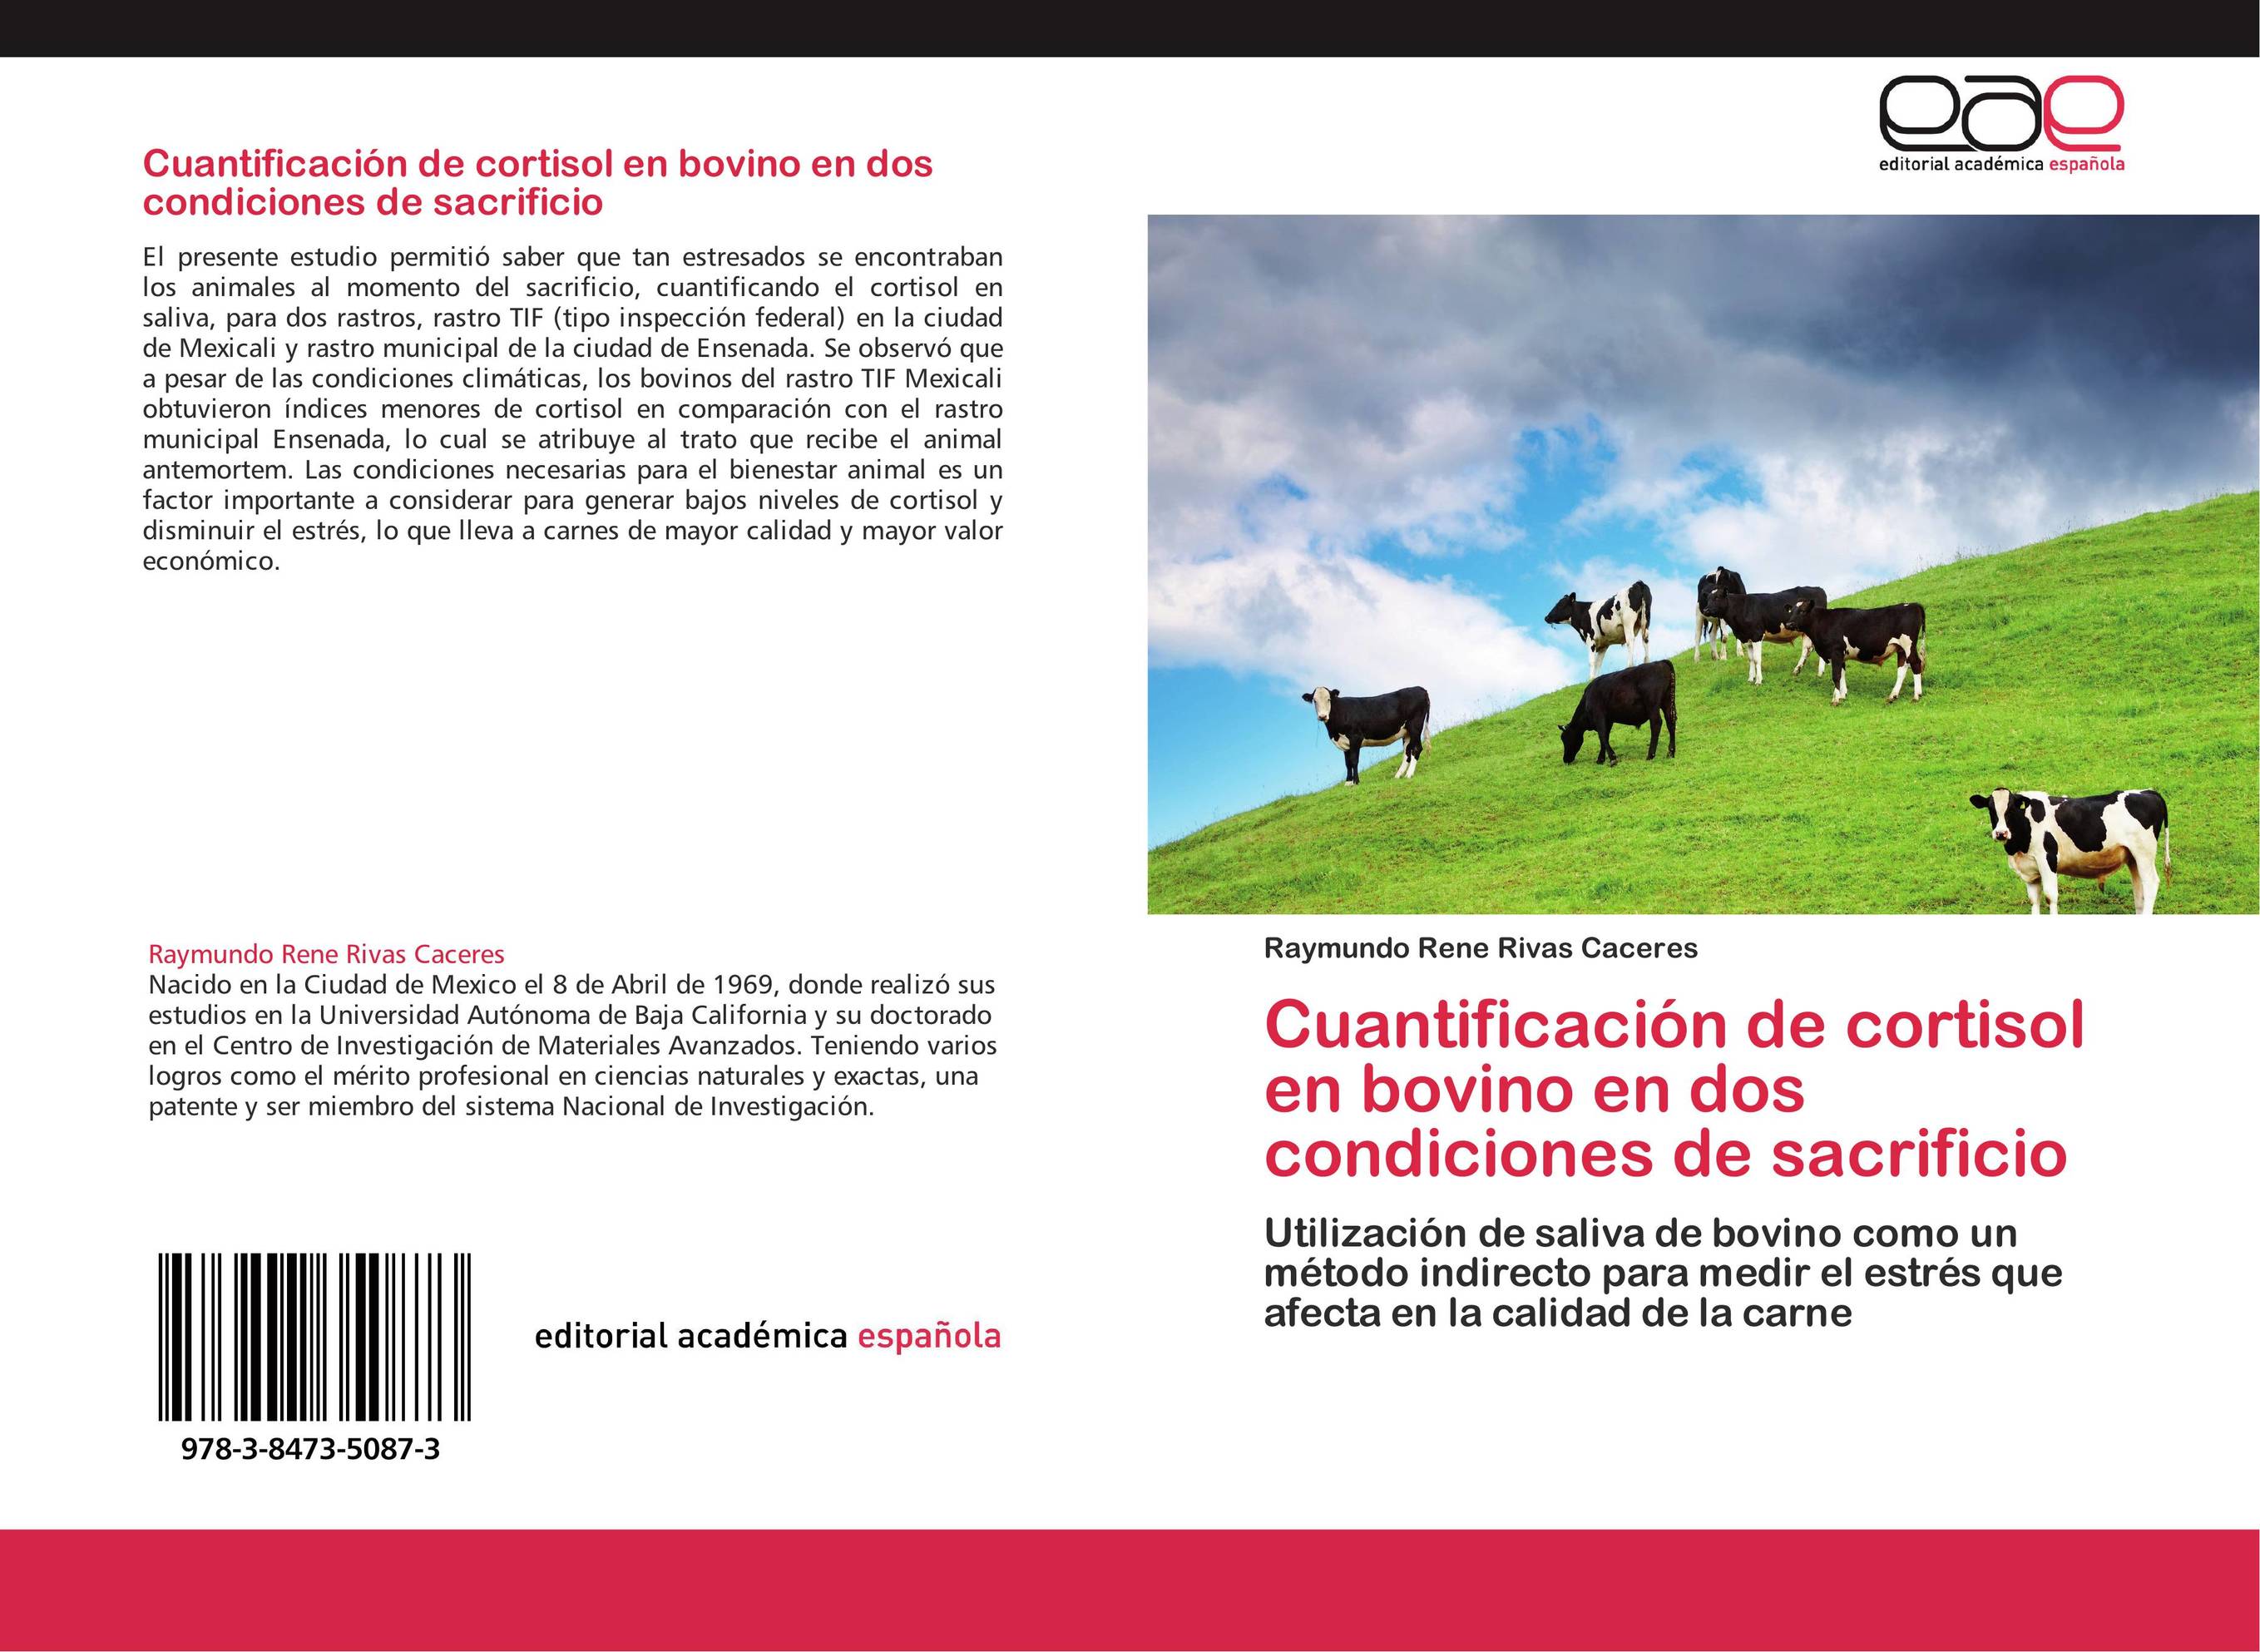 Cuantificación de cortisol en bovino en dos condiciones de sacrificio